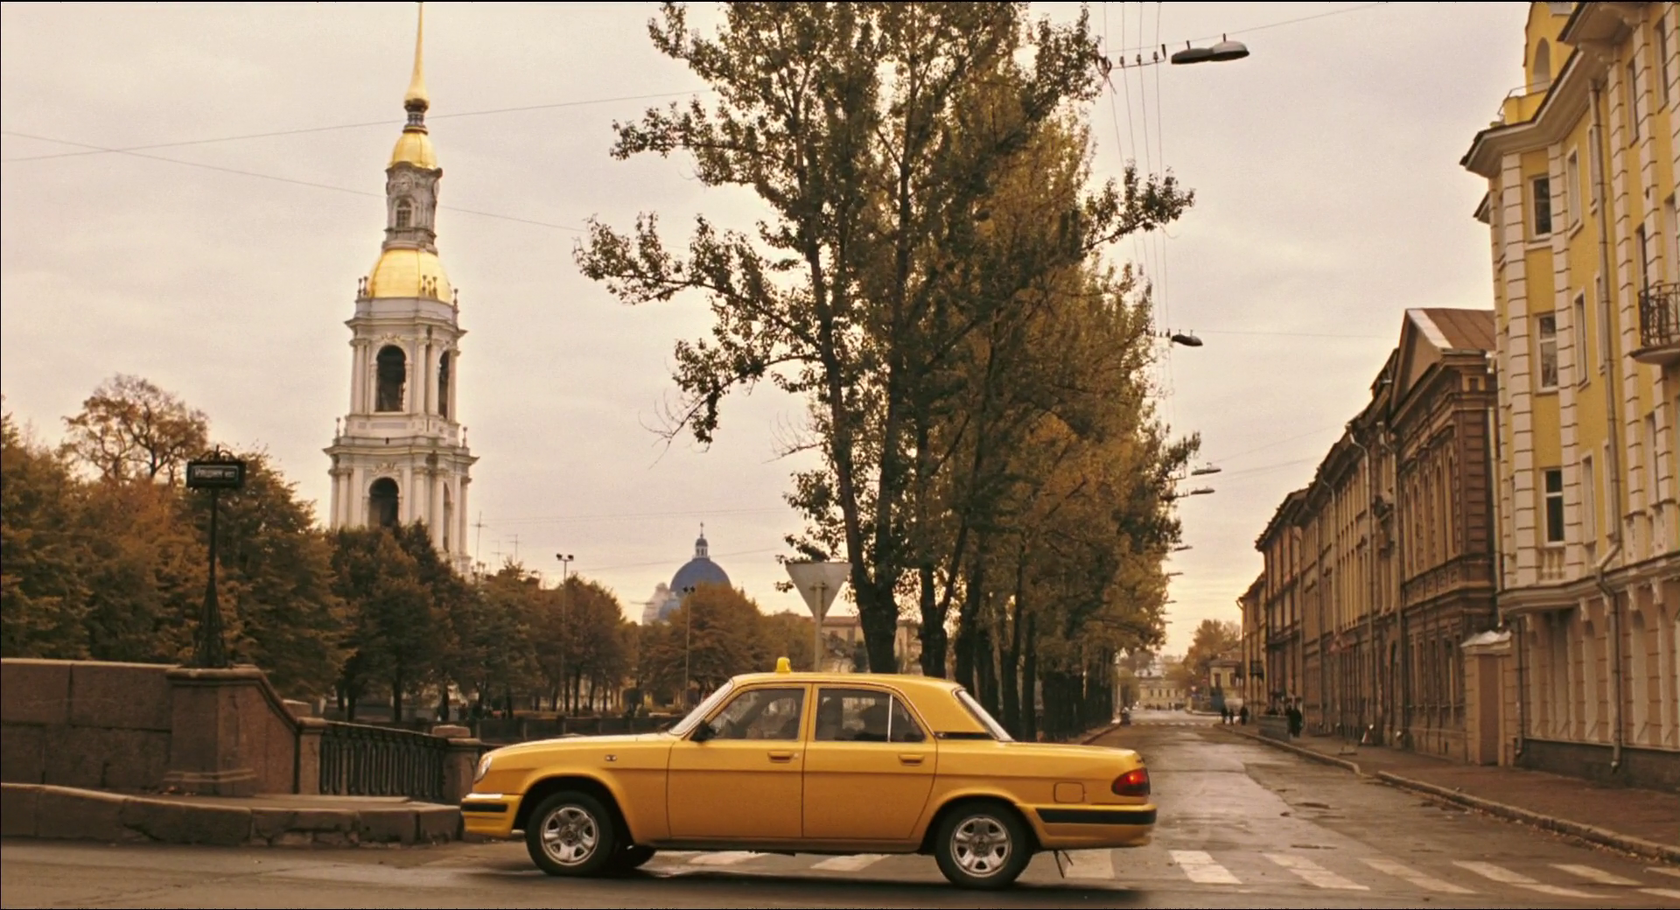 На углу Кашина моста и набережной Крюкова канала Лундгрен выходит из такси и впервые шагает по Петербургу на своих двоих.